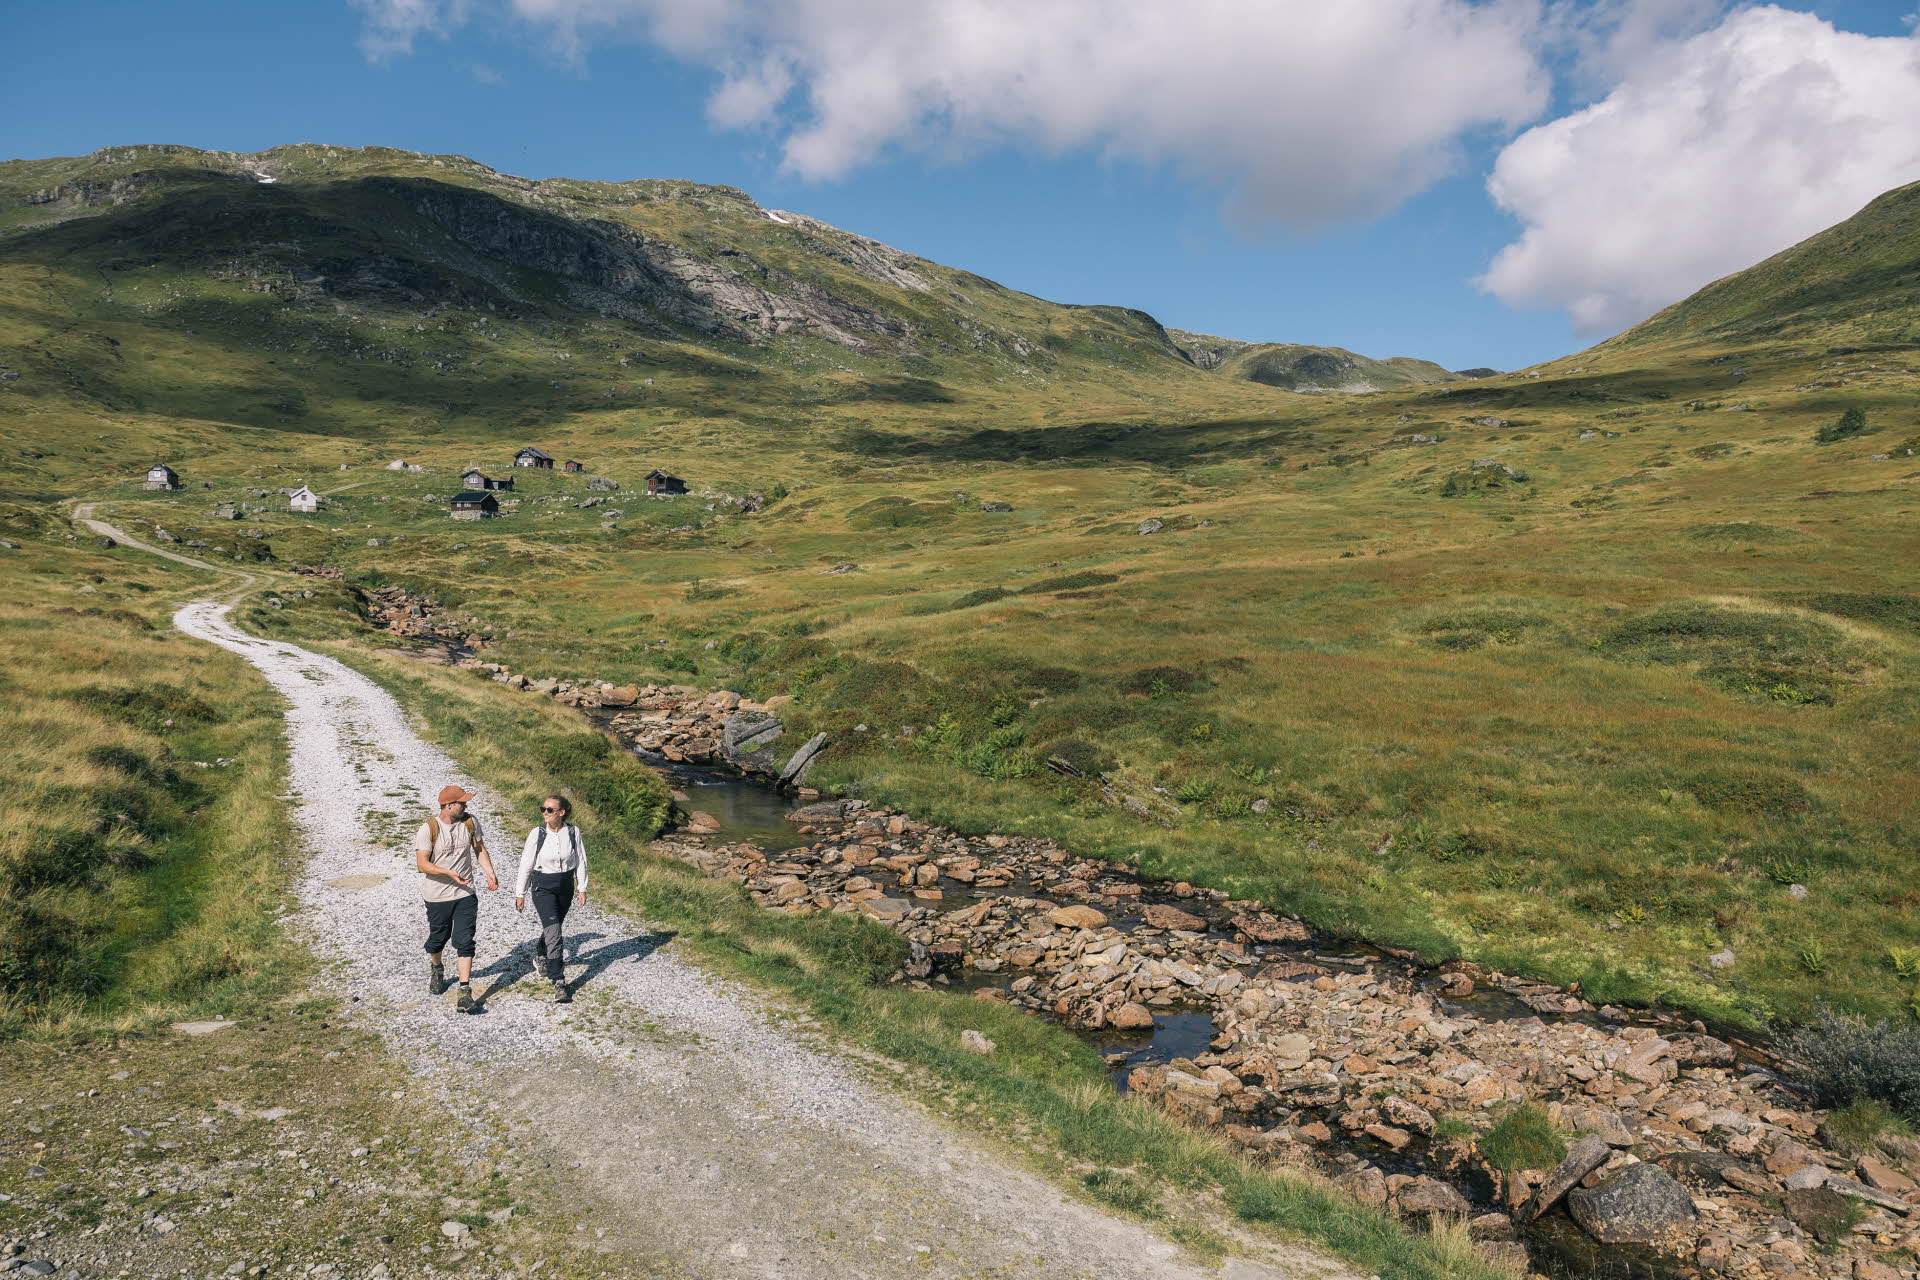 Tres niños saltando sobre una roca en la montaña de Myrkdalen